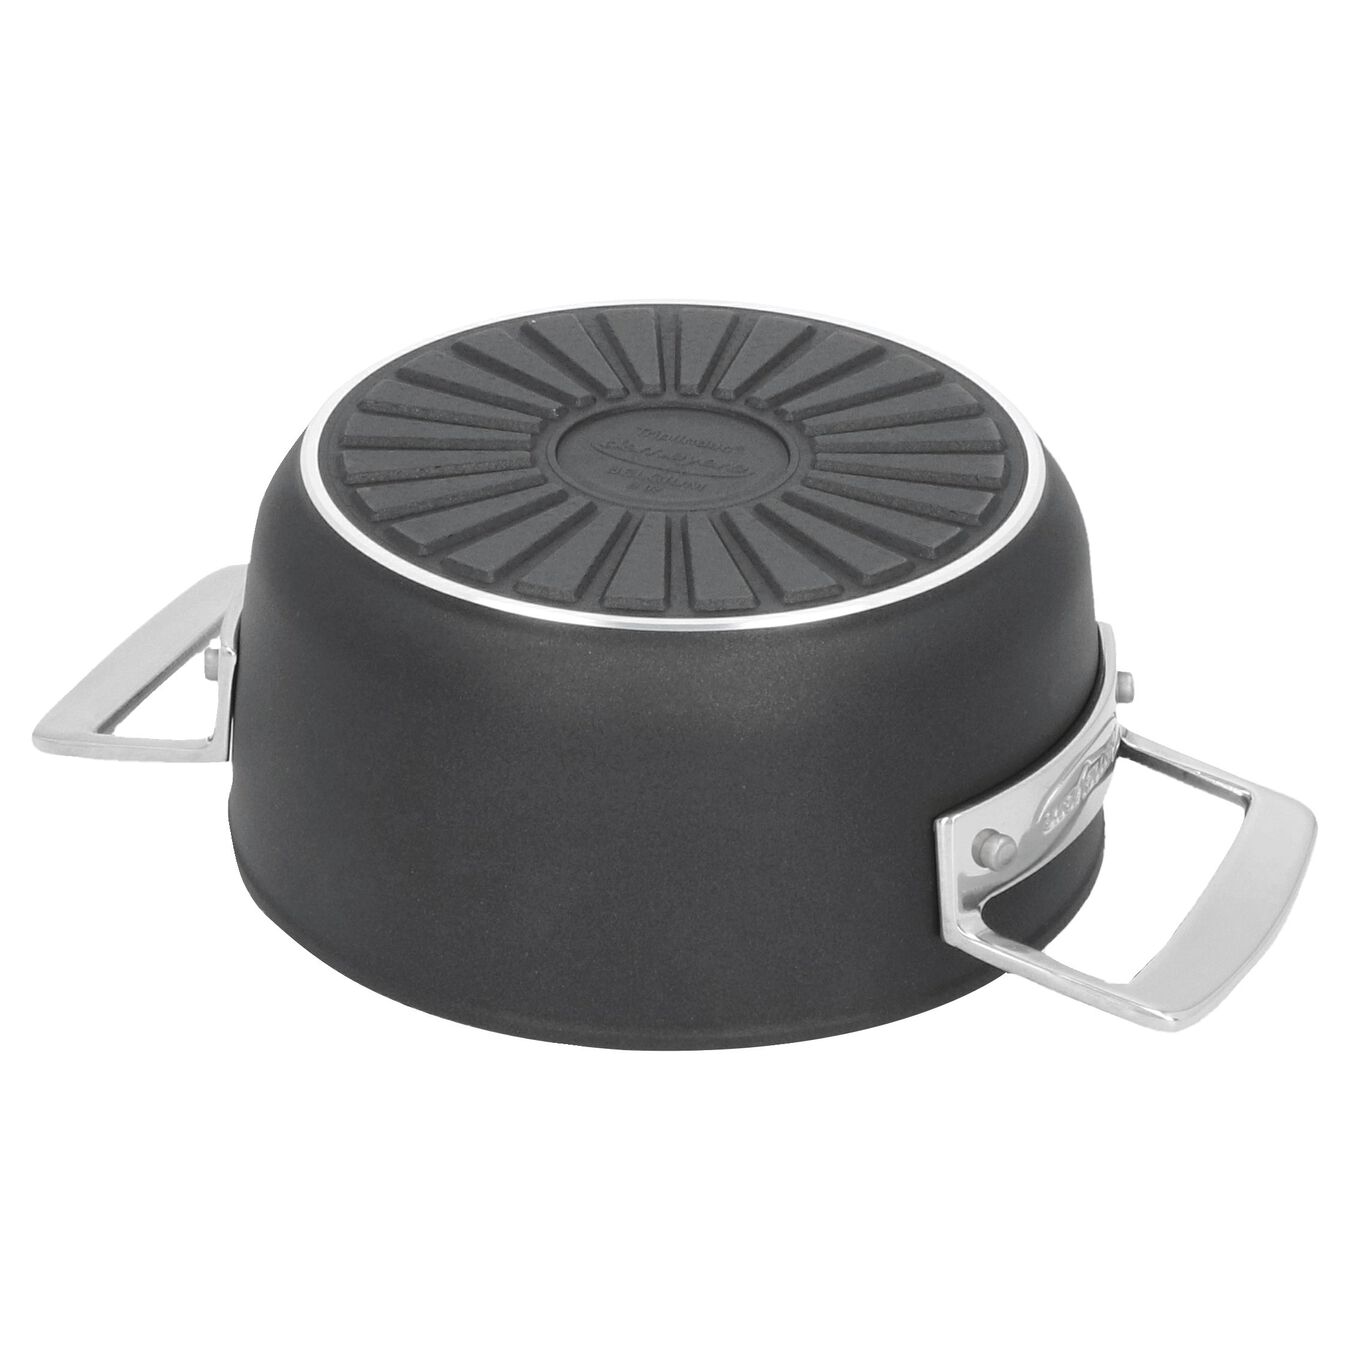 16 cm Aluminum Stew pot with lid black,,large 2